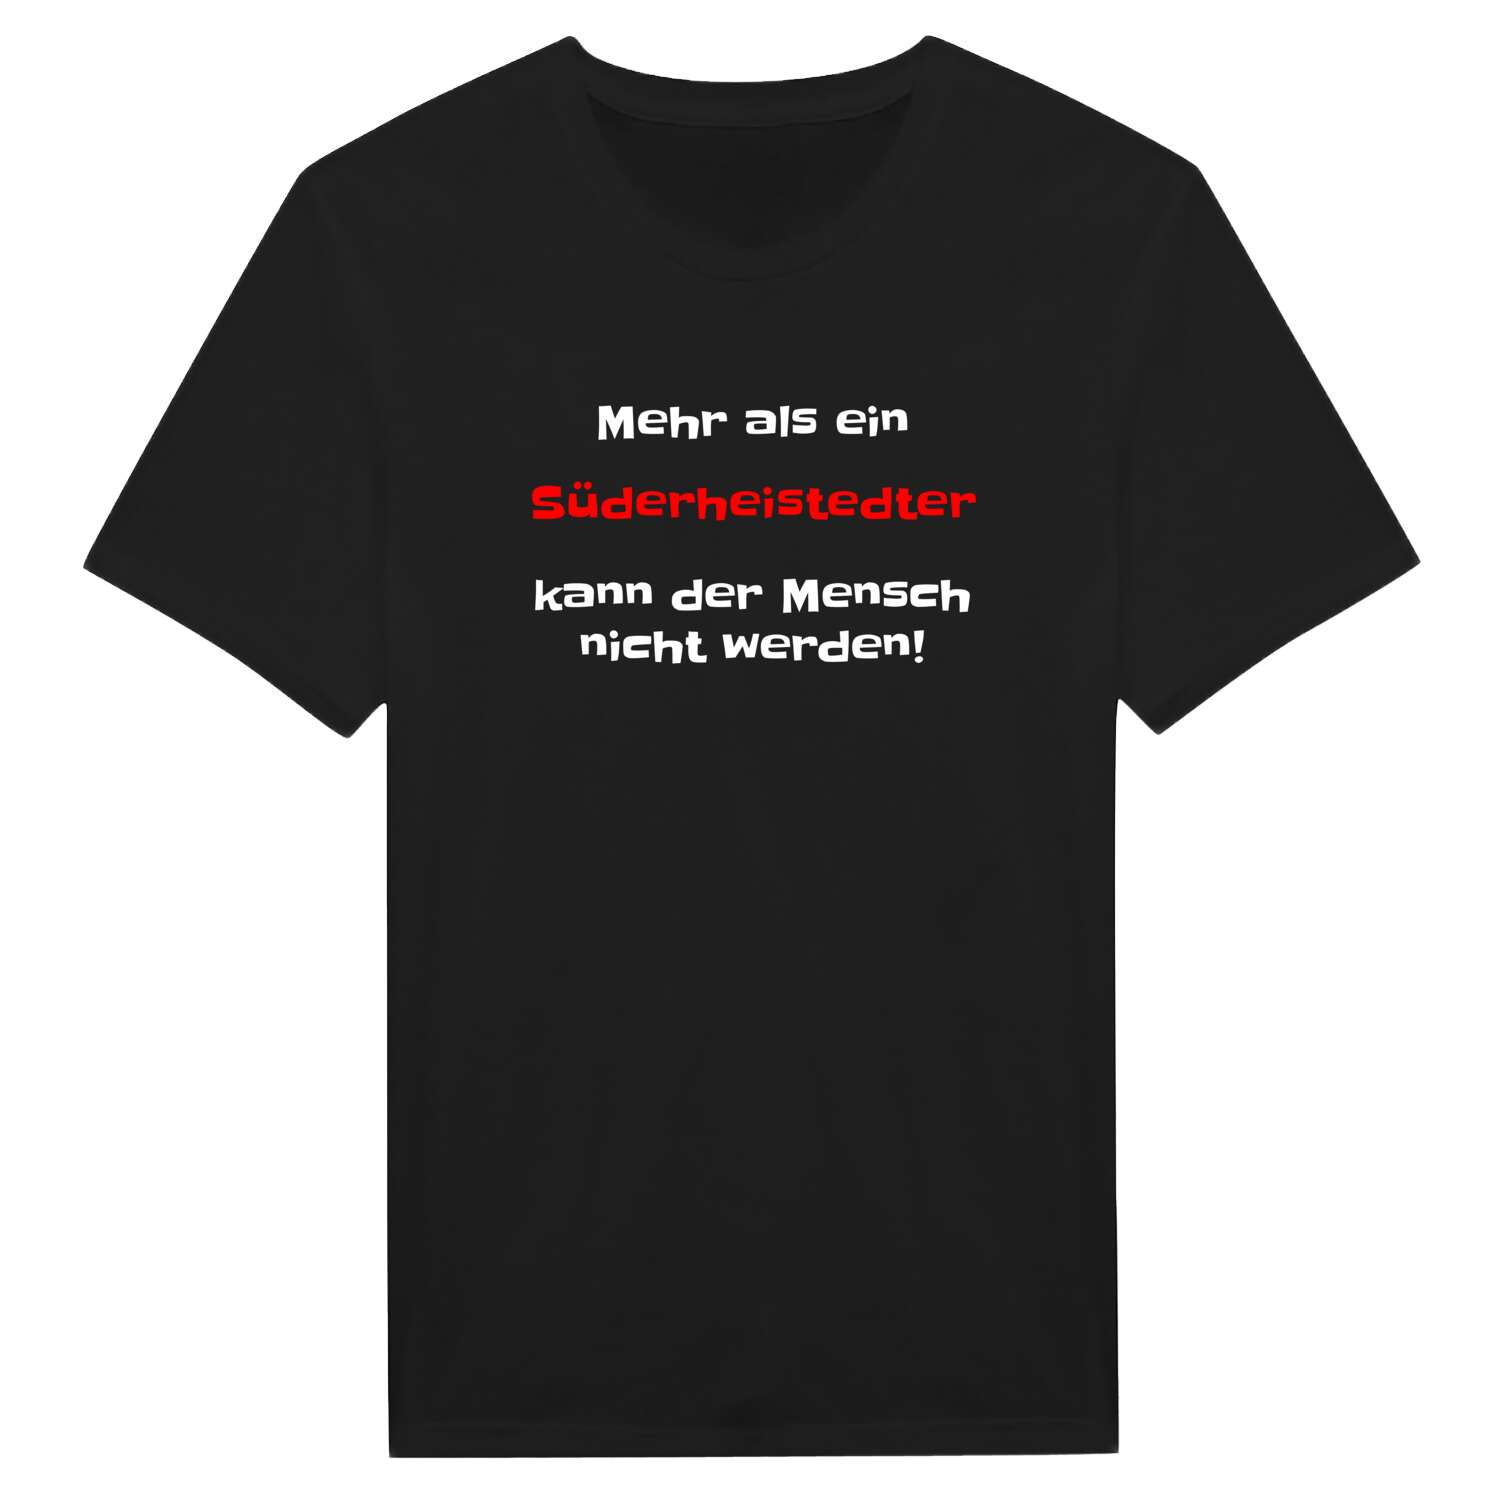 Süderheistedt T-Shirt »Mehr als ein«